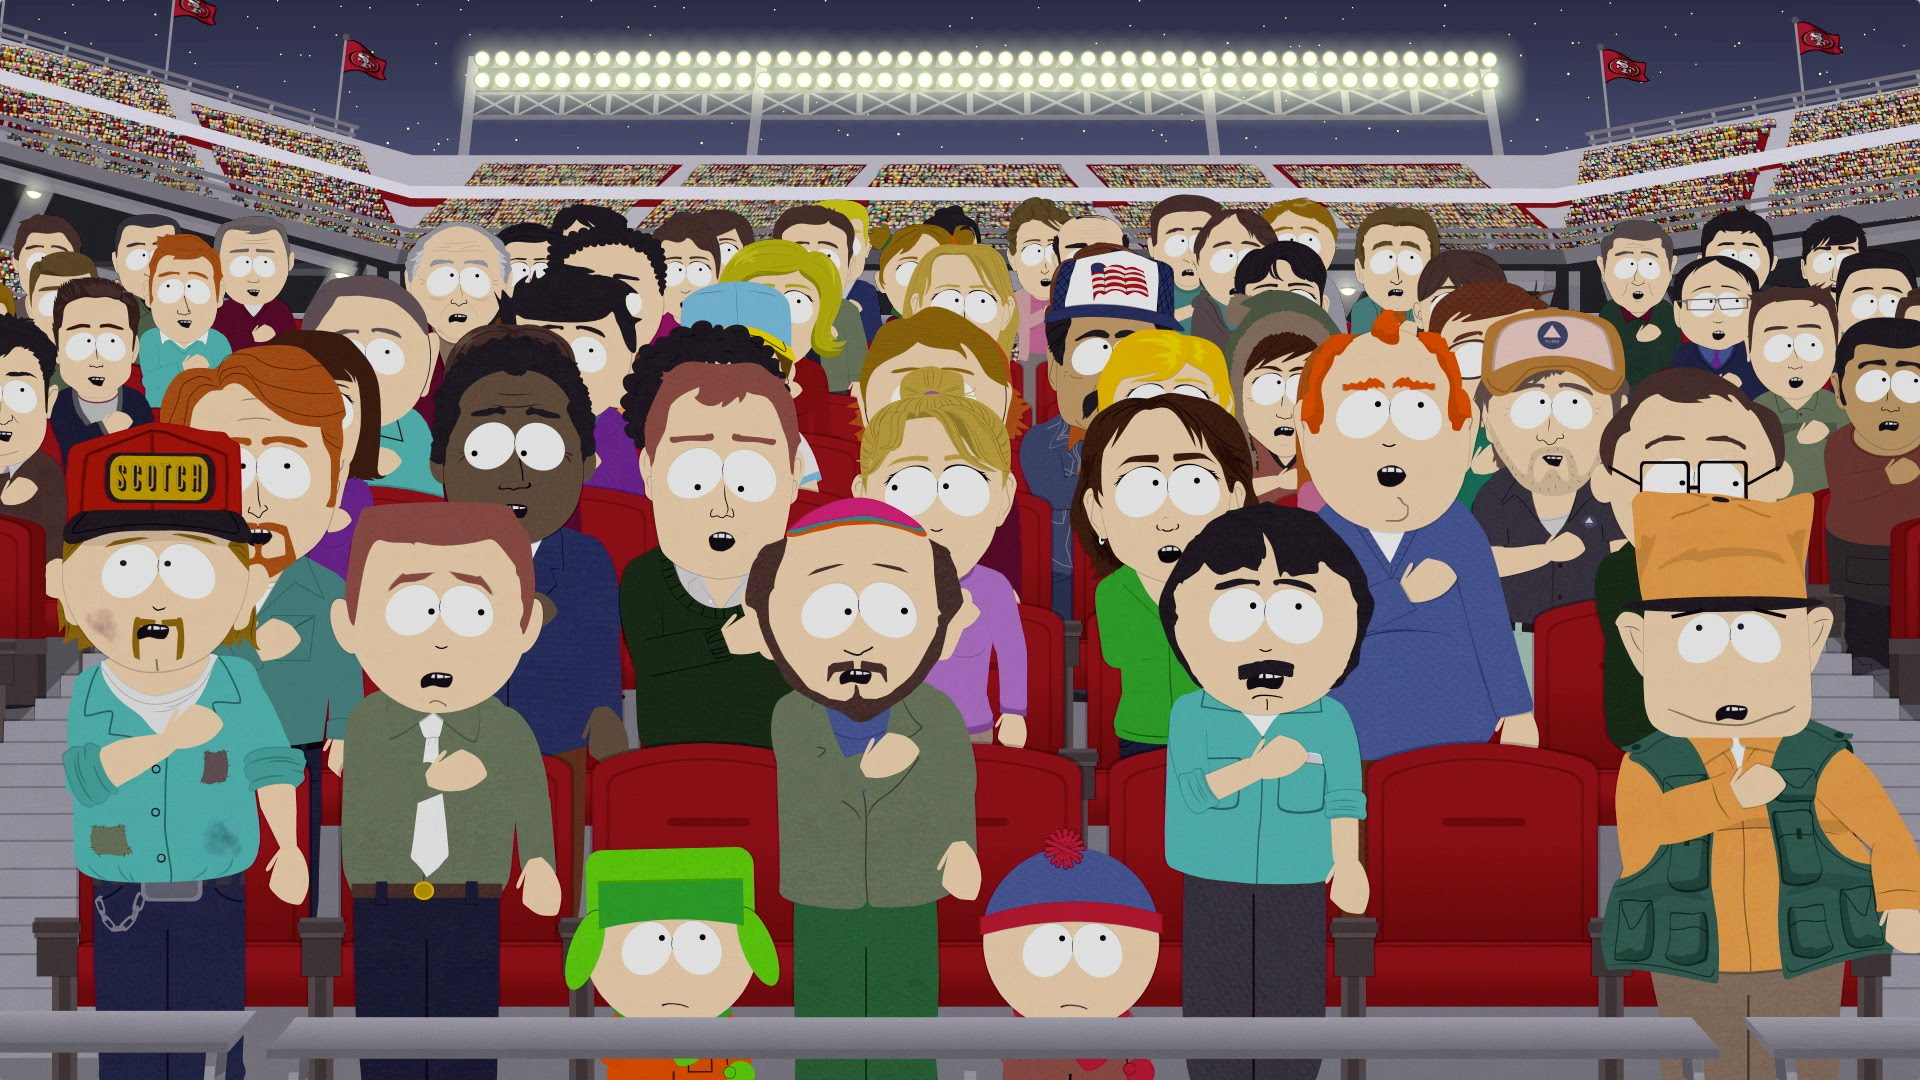 South Park mocks society & Colin Kaepernick in new episode